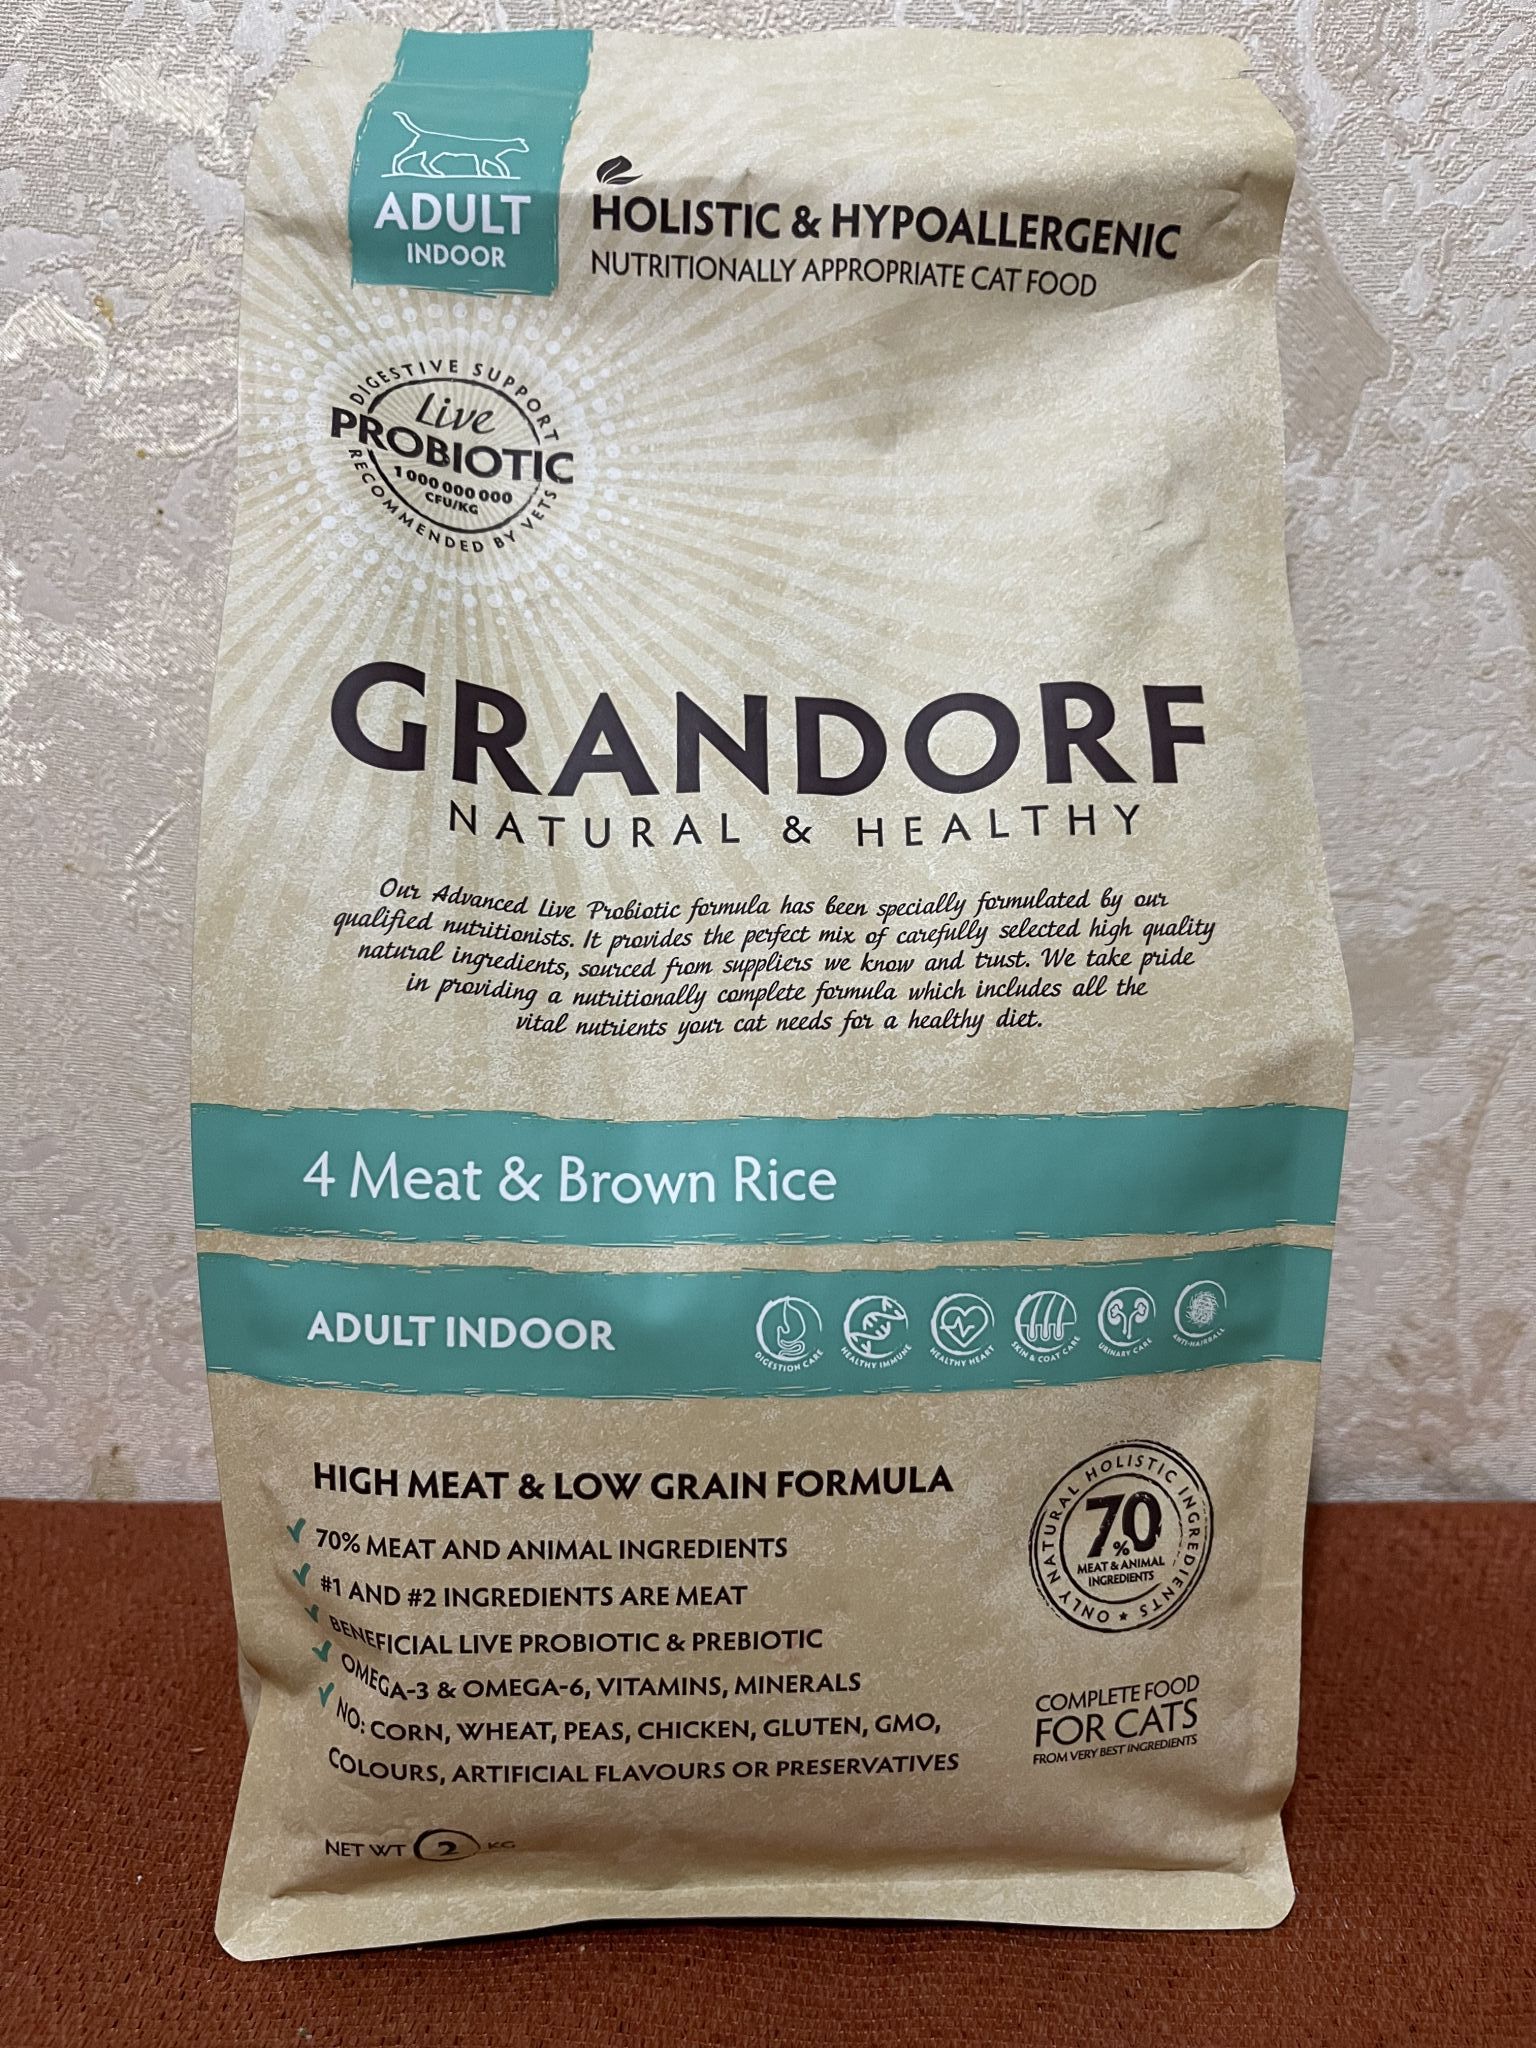 Грандорф купить 4 мяса. Grandorf сухой корм Adult Indoor Probiotic для взрослых домашних кошек 4 мяса, 2кг. Grandorf Cat 4meat Indoor Probiotic корм д/кошек, 4вида мяса.